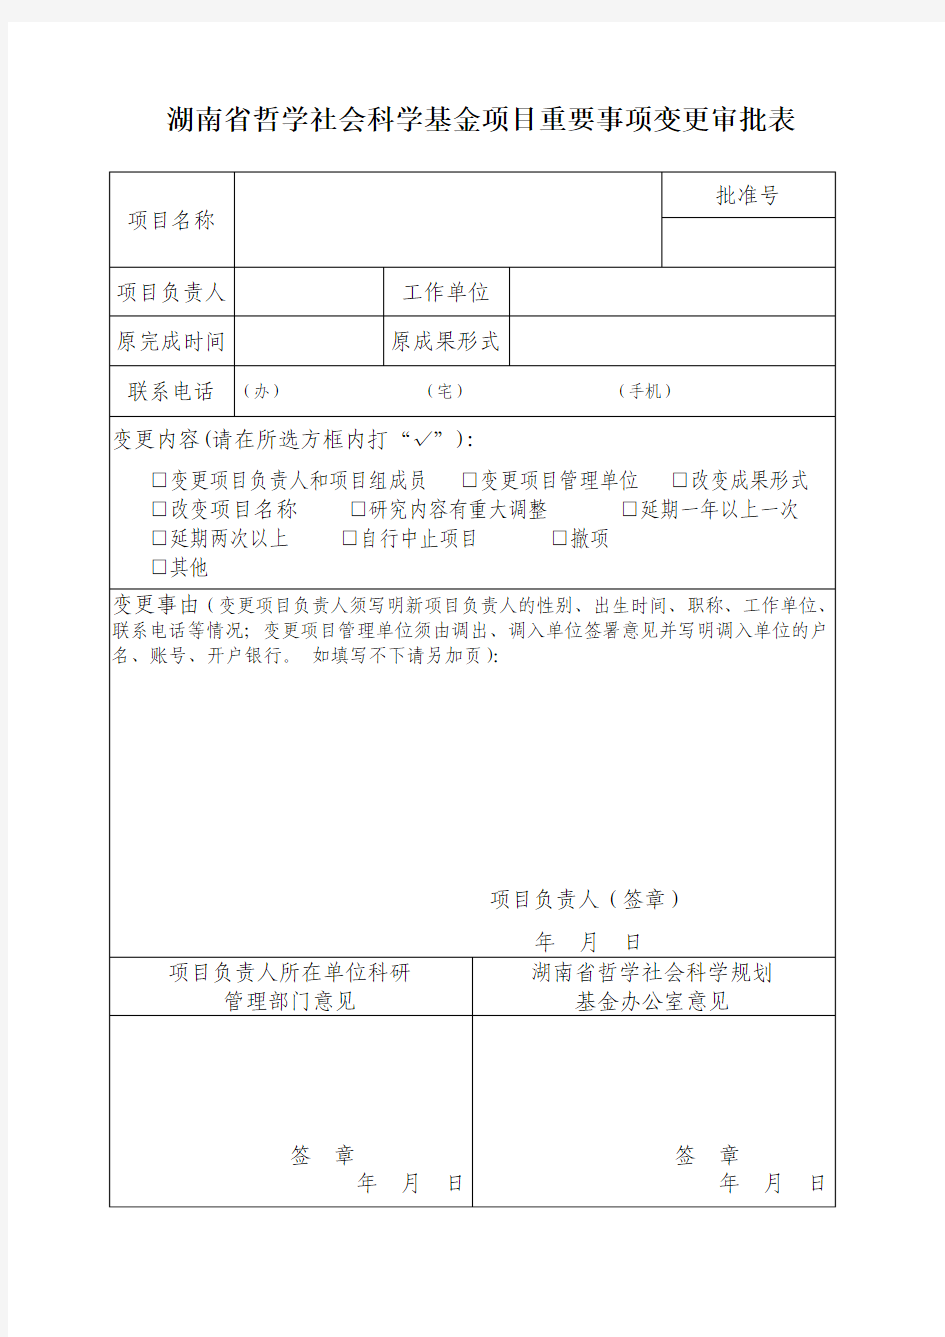 湖南省哲学社会科学基金项目重要事项变更审批表